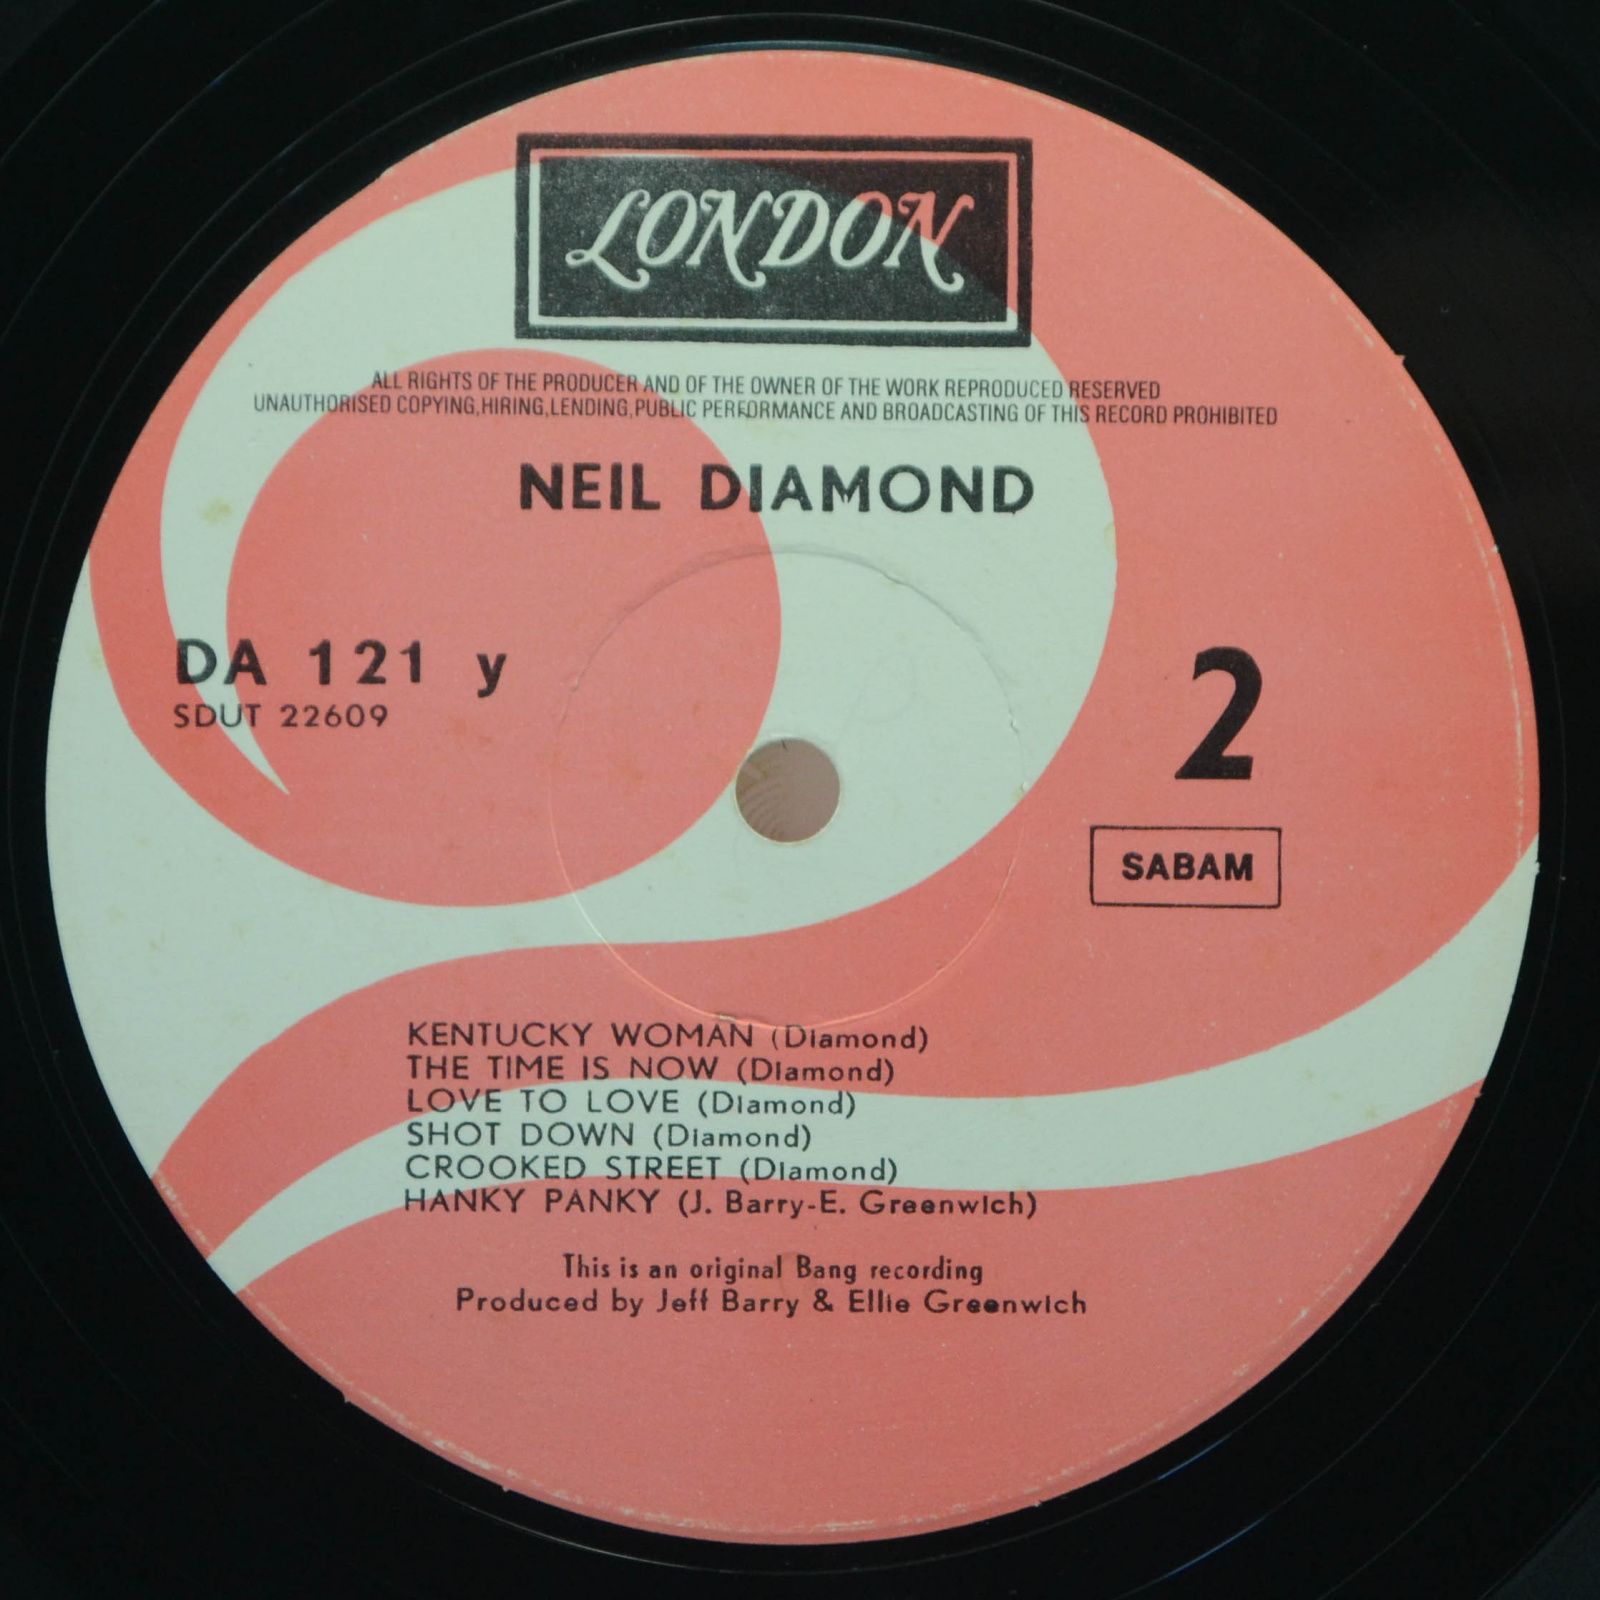 Neil Diamond — Neil Diamond (2LP), 1978